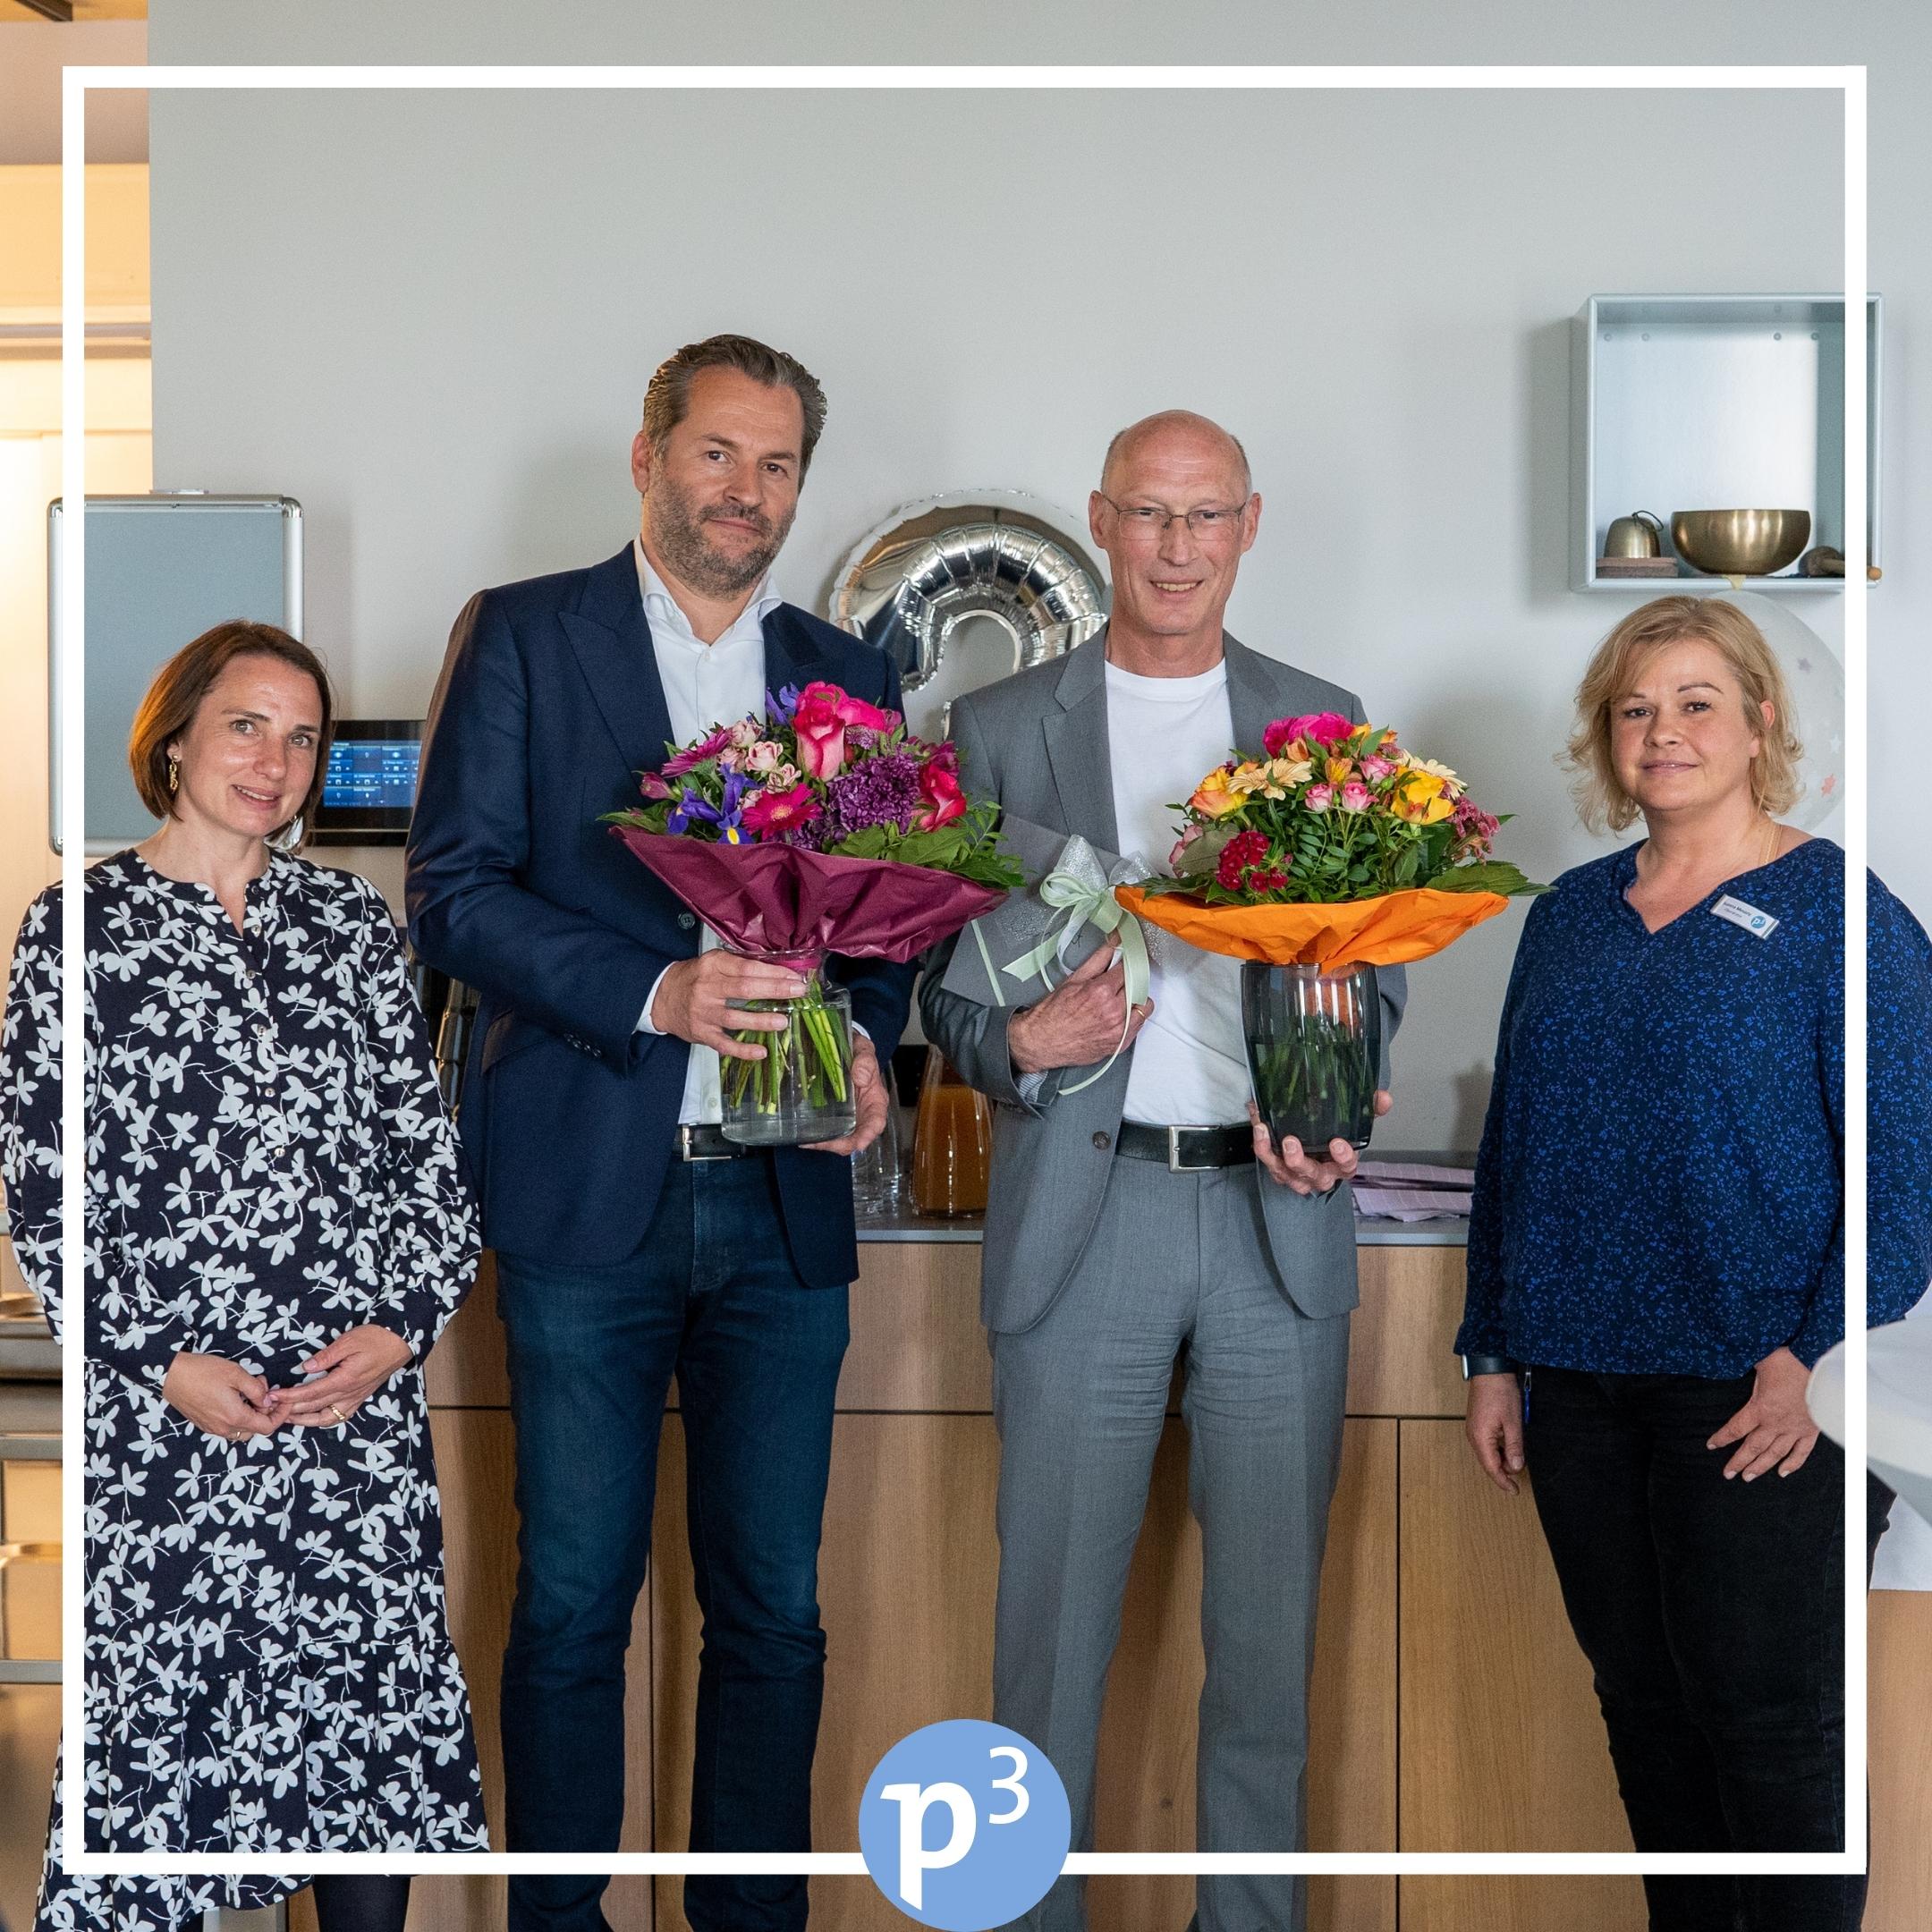 3 Jahre P3 Klinik in Tutzing am Starnberger See. Wir, das gesamte Team, sagen danke an alle Patientinnen und Patienten für das entgegengebrachte Vertrauen und freuen uns auf weitere gute Zusammenarbeit miteinander und mit allen, die zu uns kommen. 